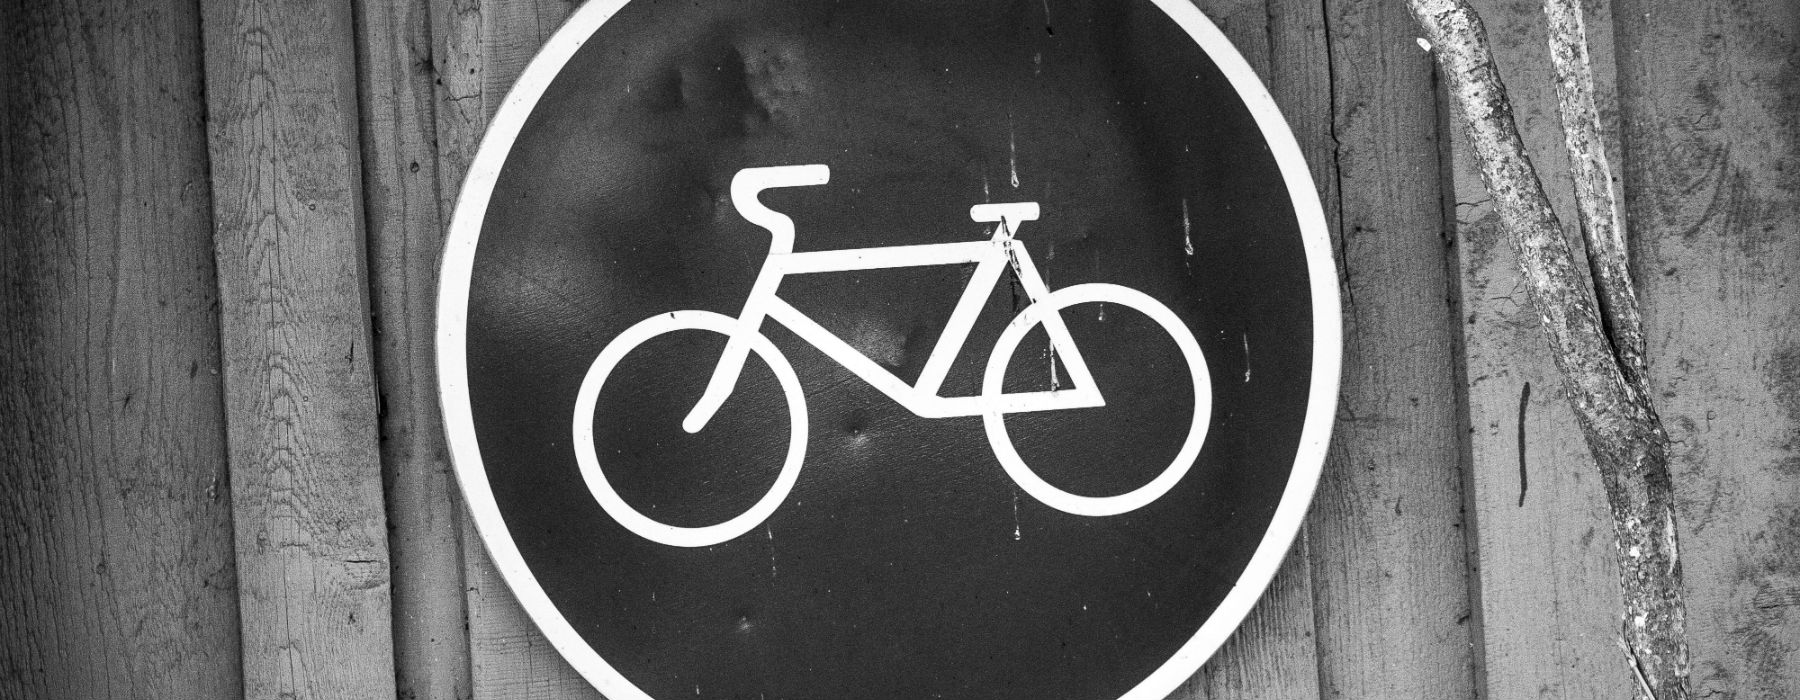 segnale stradale bicicletta